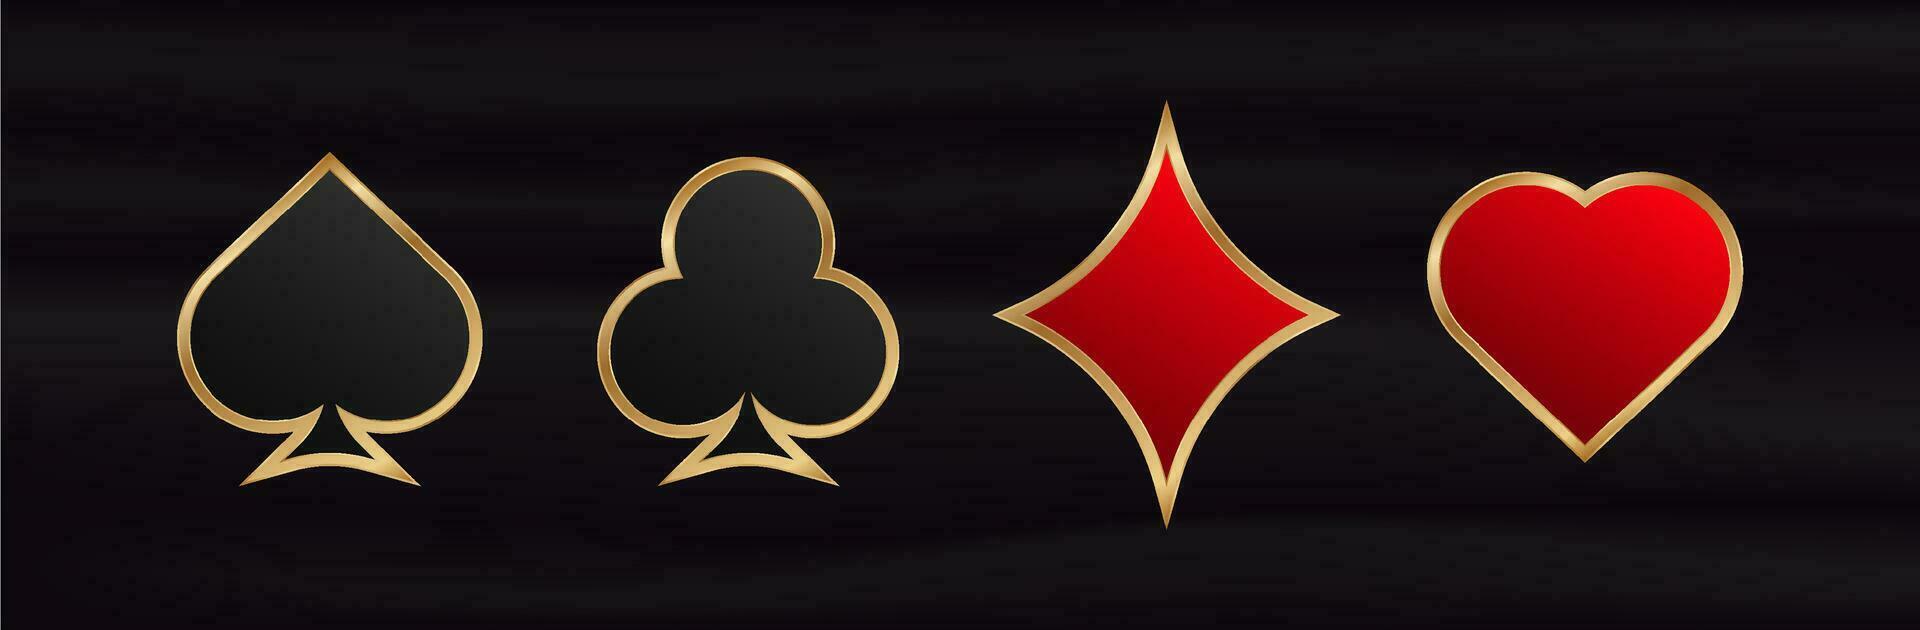 juego tarjeta trajes. juego rojo símbolo de suerte en póker y negro exitoso juego en casino con veintiuna y vector apuestas